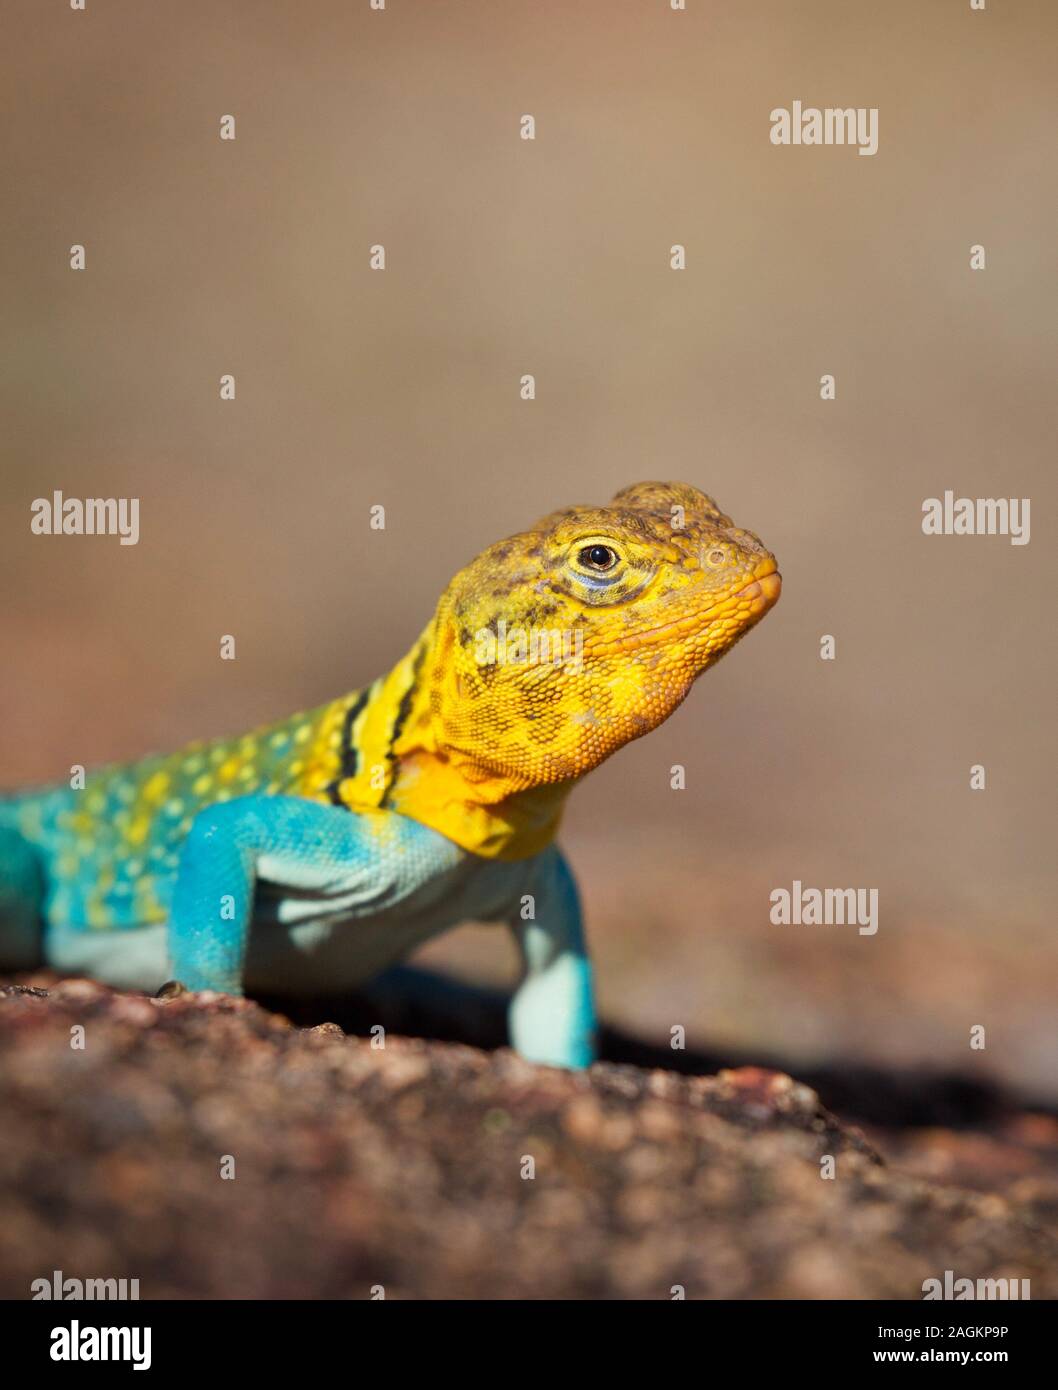 Collare orientale Lizard, close up ritratto, fotografata nel selvaggio. Questa è una wild lucertola, non un animale domestico. Foto Stock